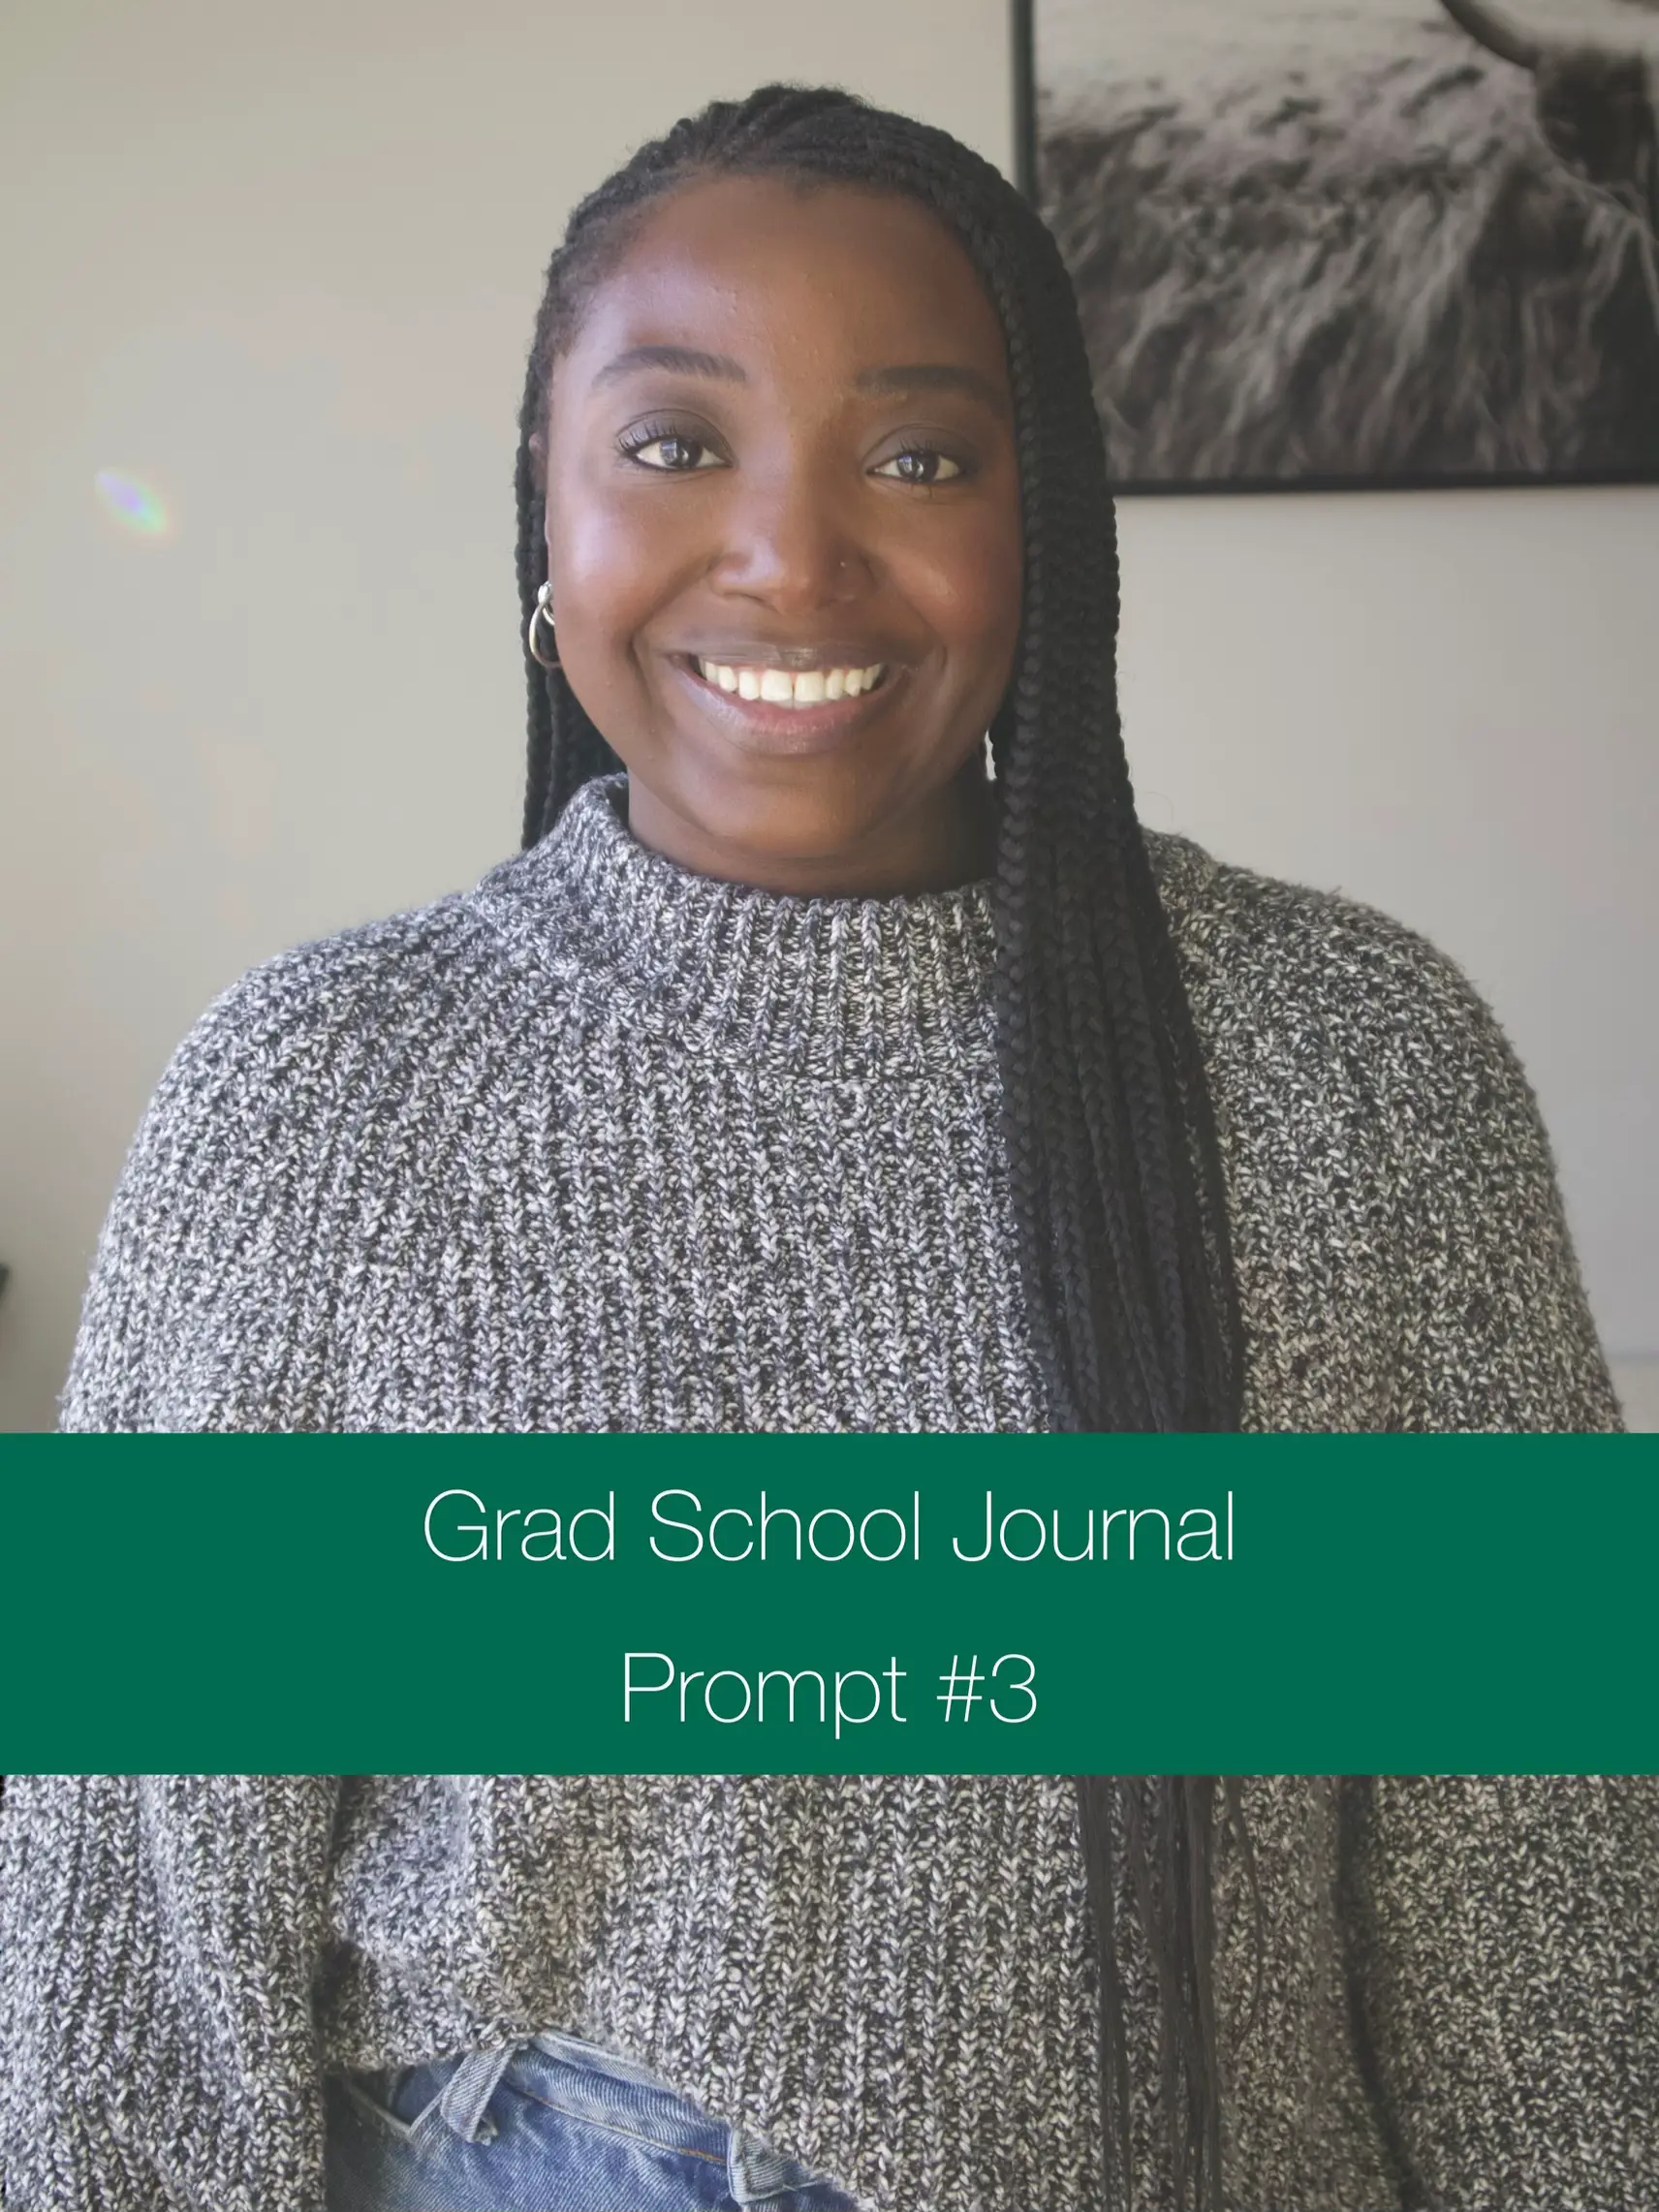 Grad School Journal Prompt #3's images